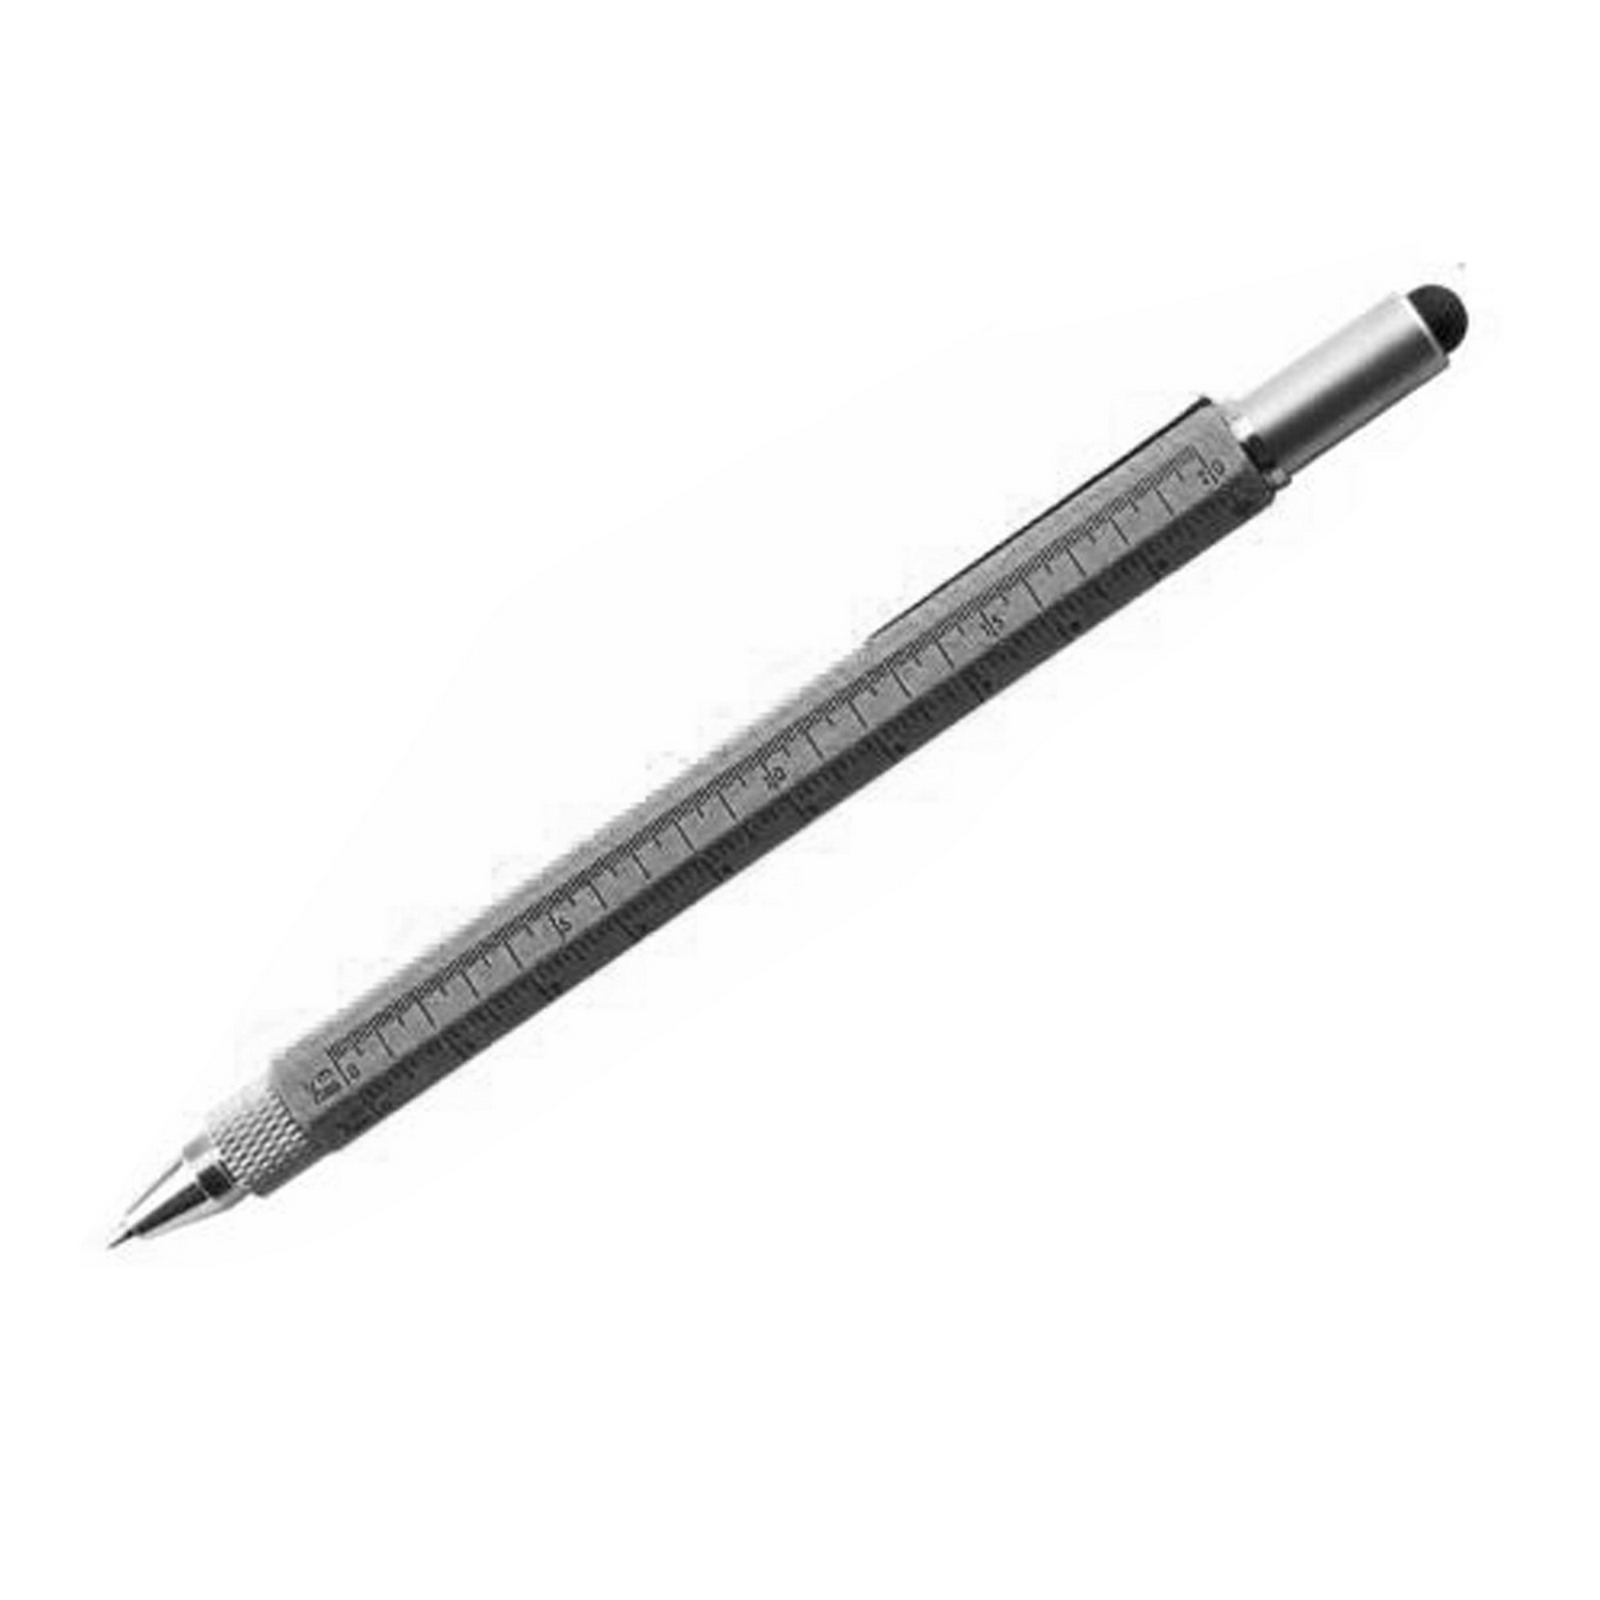 6-in-1 Tool Stylus Pen